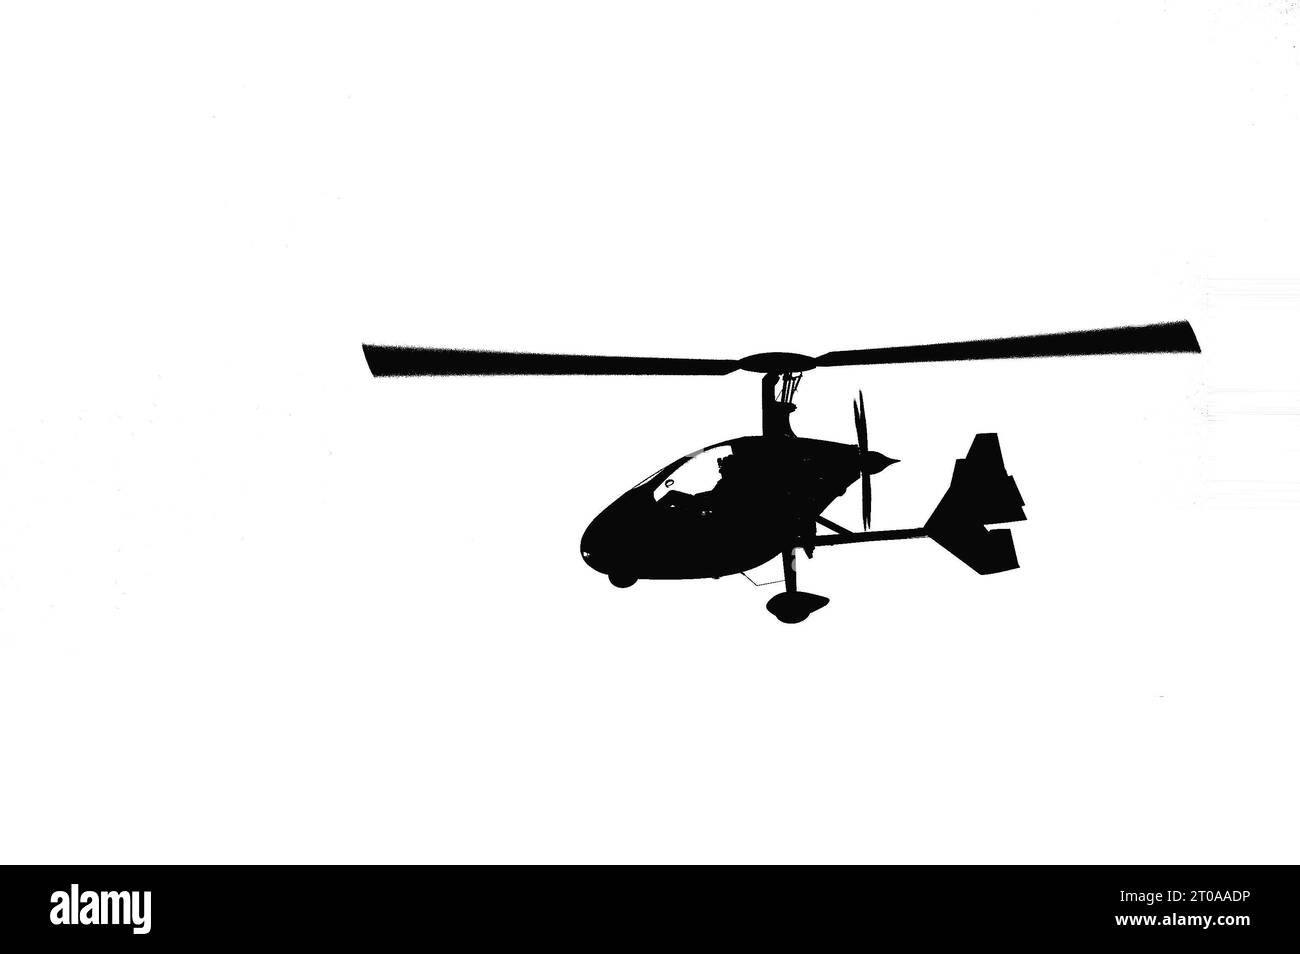 Illustration de style graffiti d'hélicoptère isolé autogiro (autogyro). Moyen de transport volant, dessin animé noir et blanc. Banque D'Images